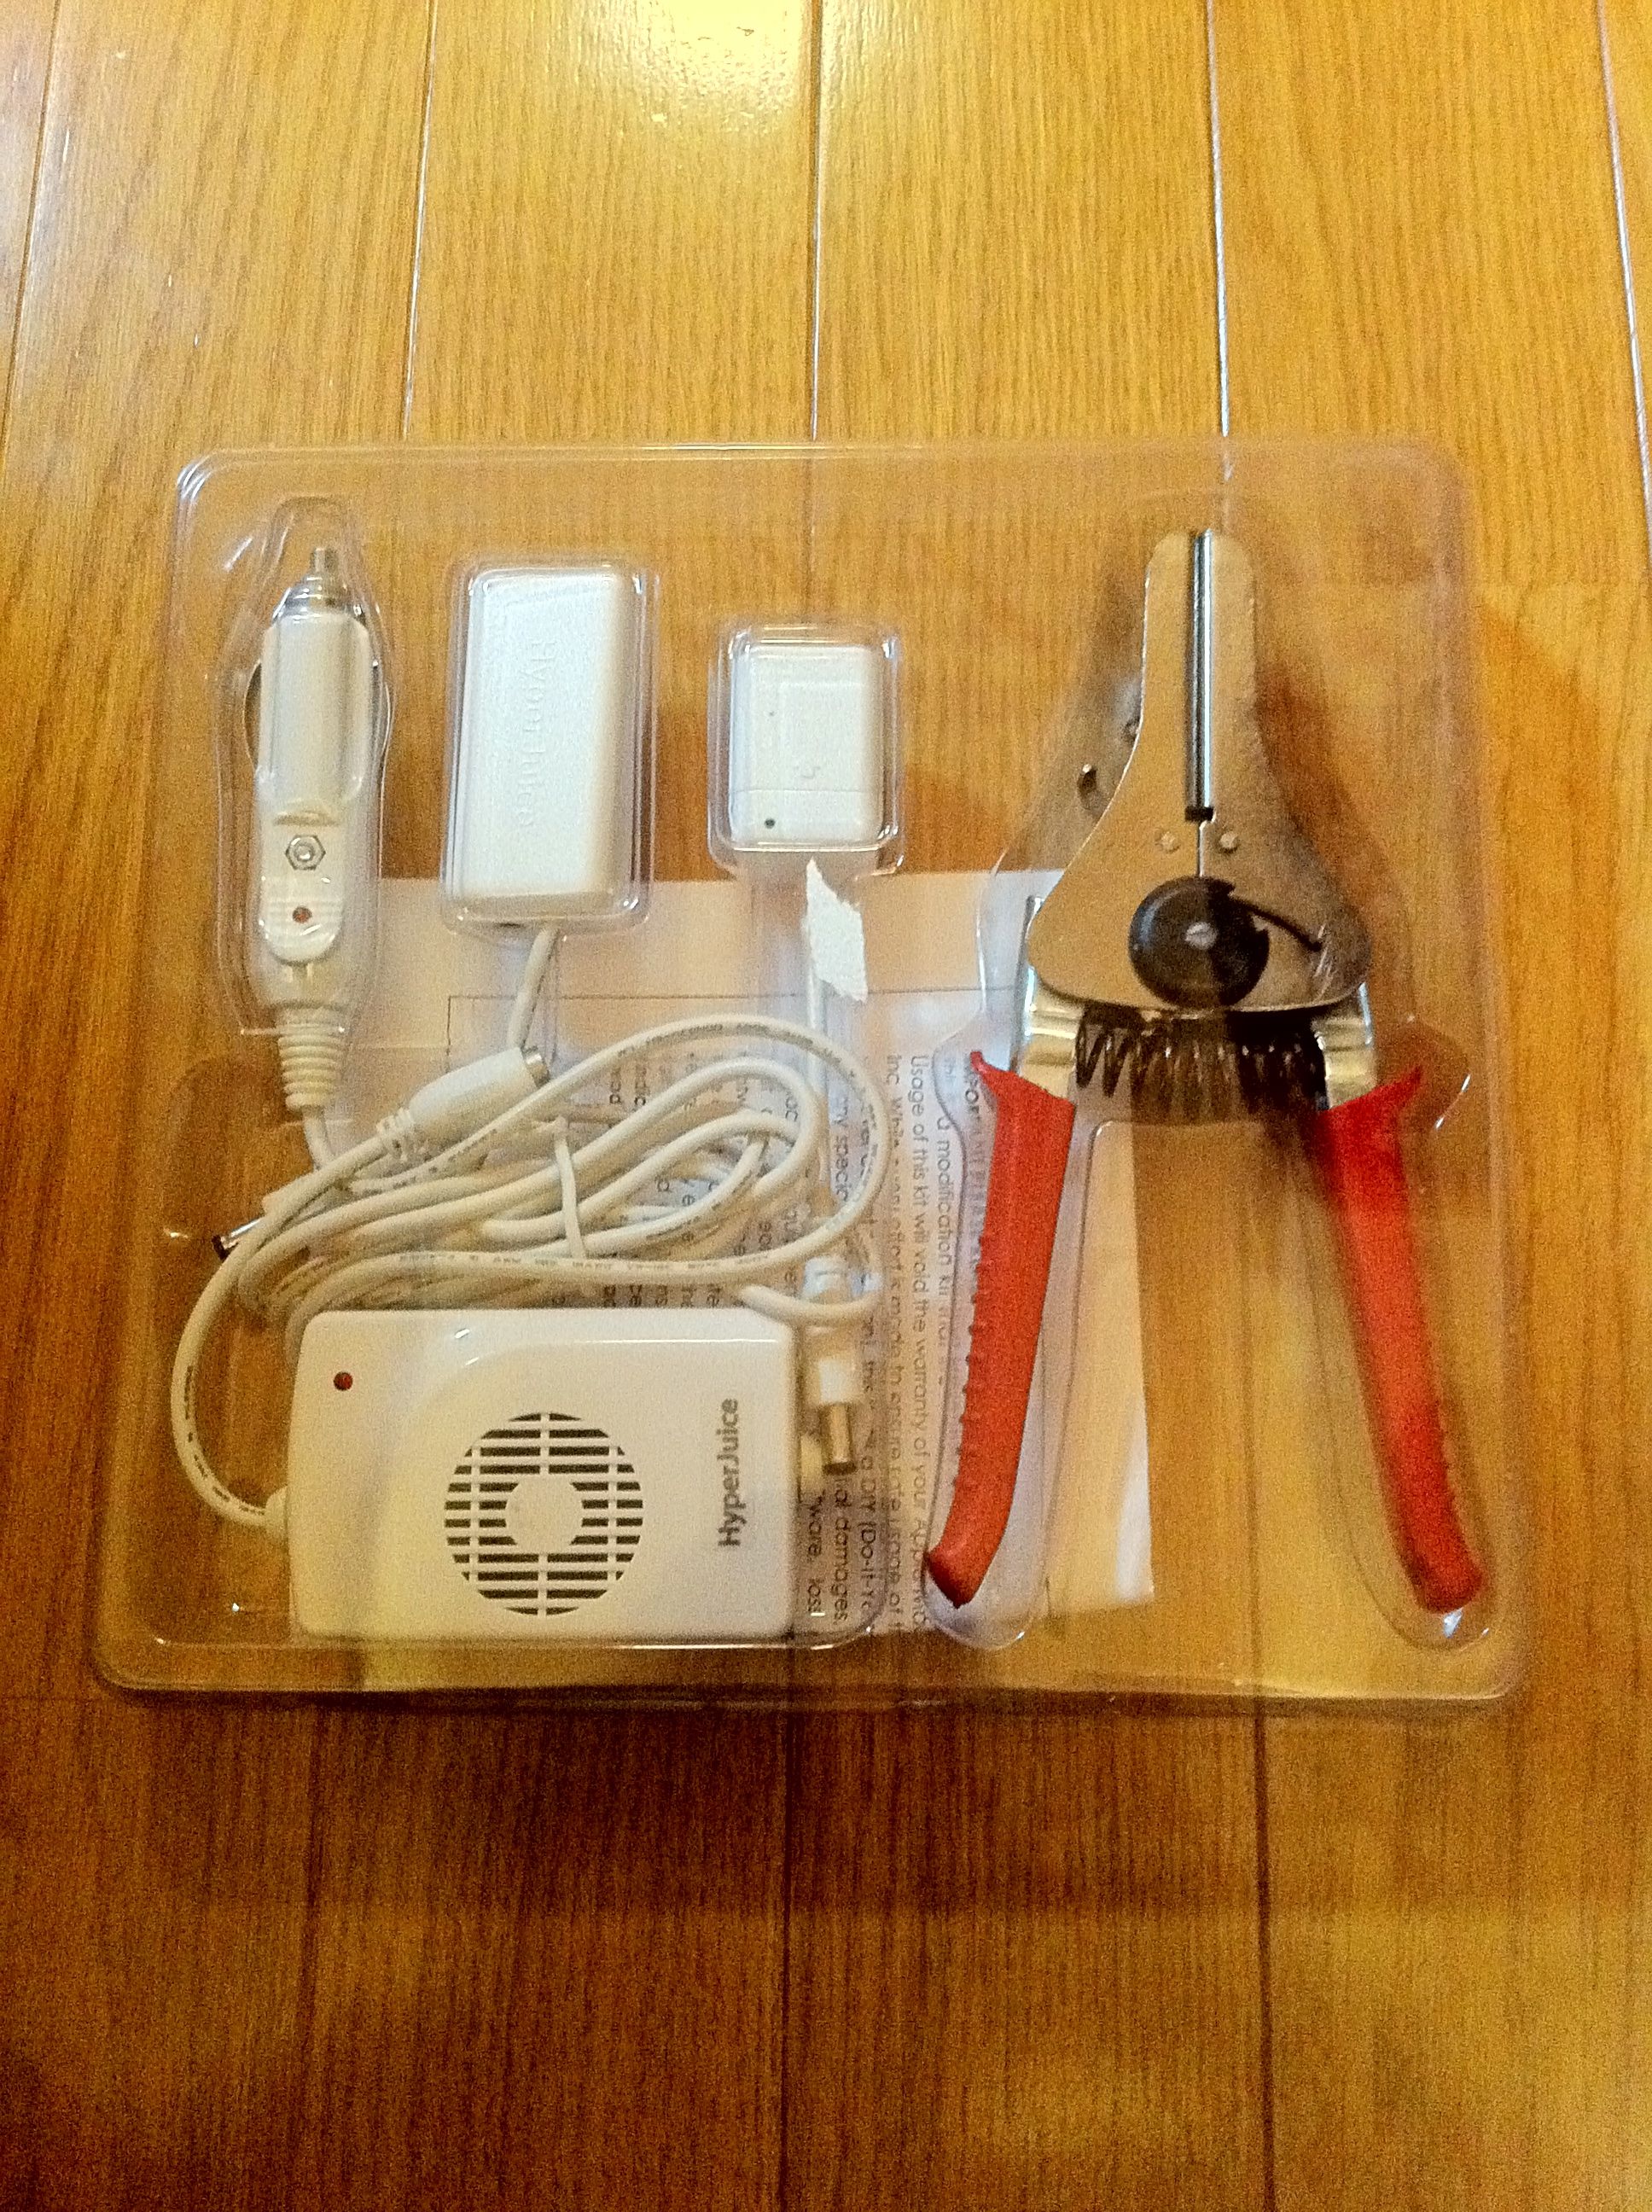 MacBookが充電出来るHyperJuiceのMagic Boxの工作が完了